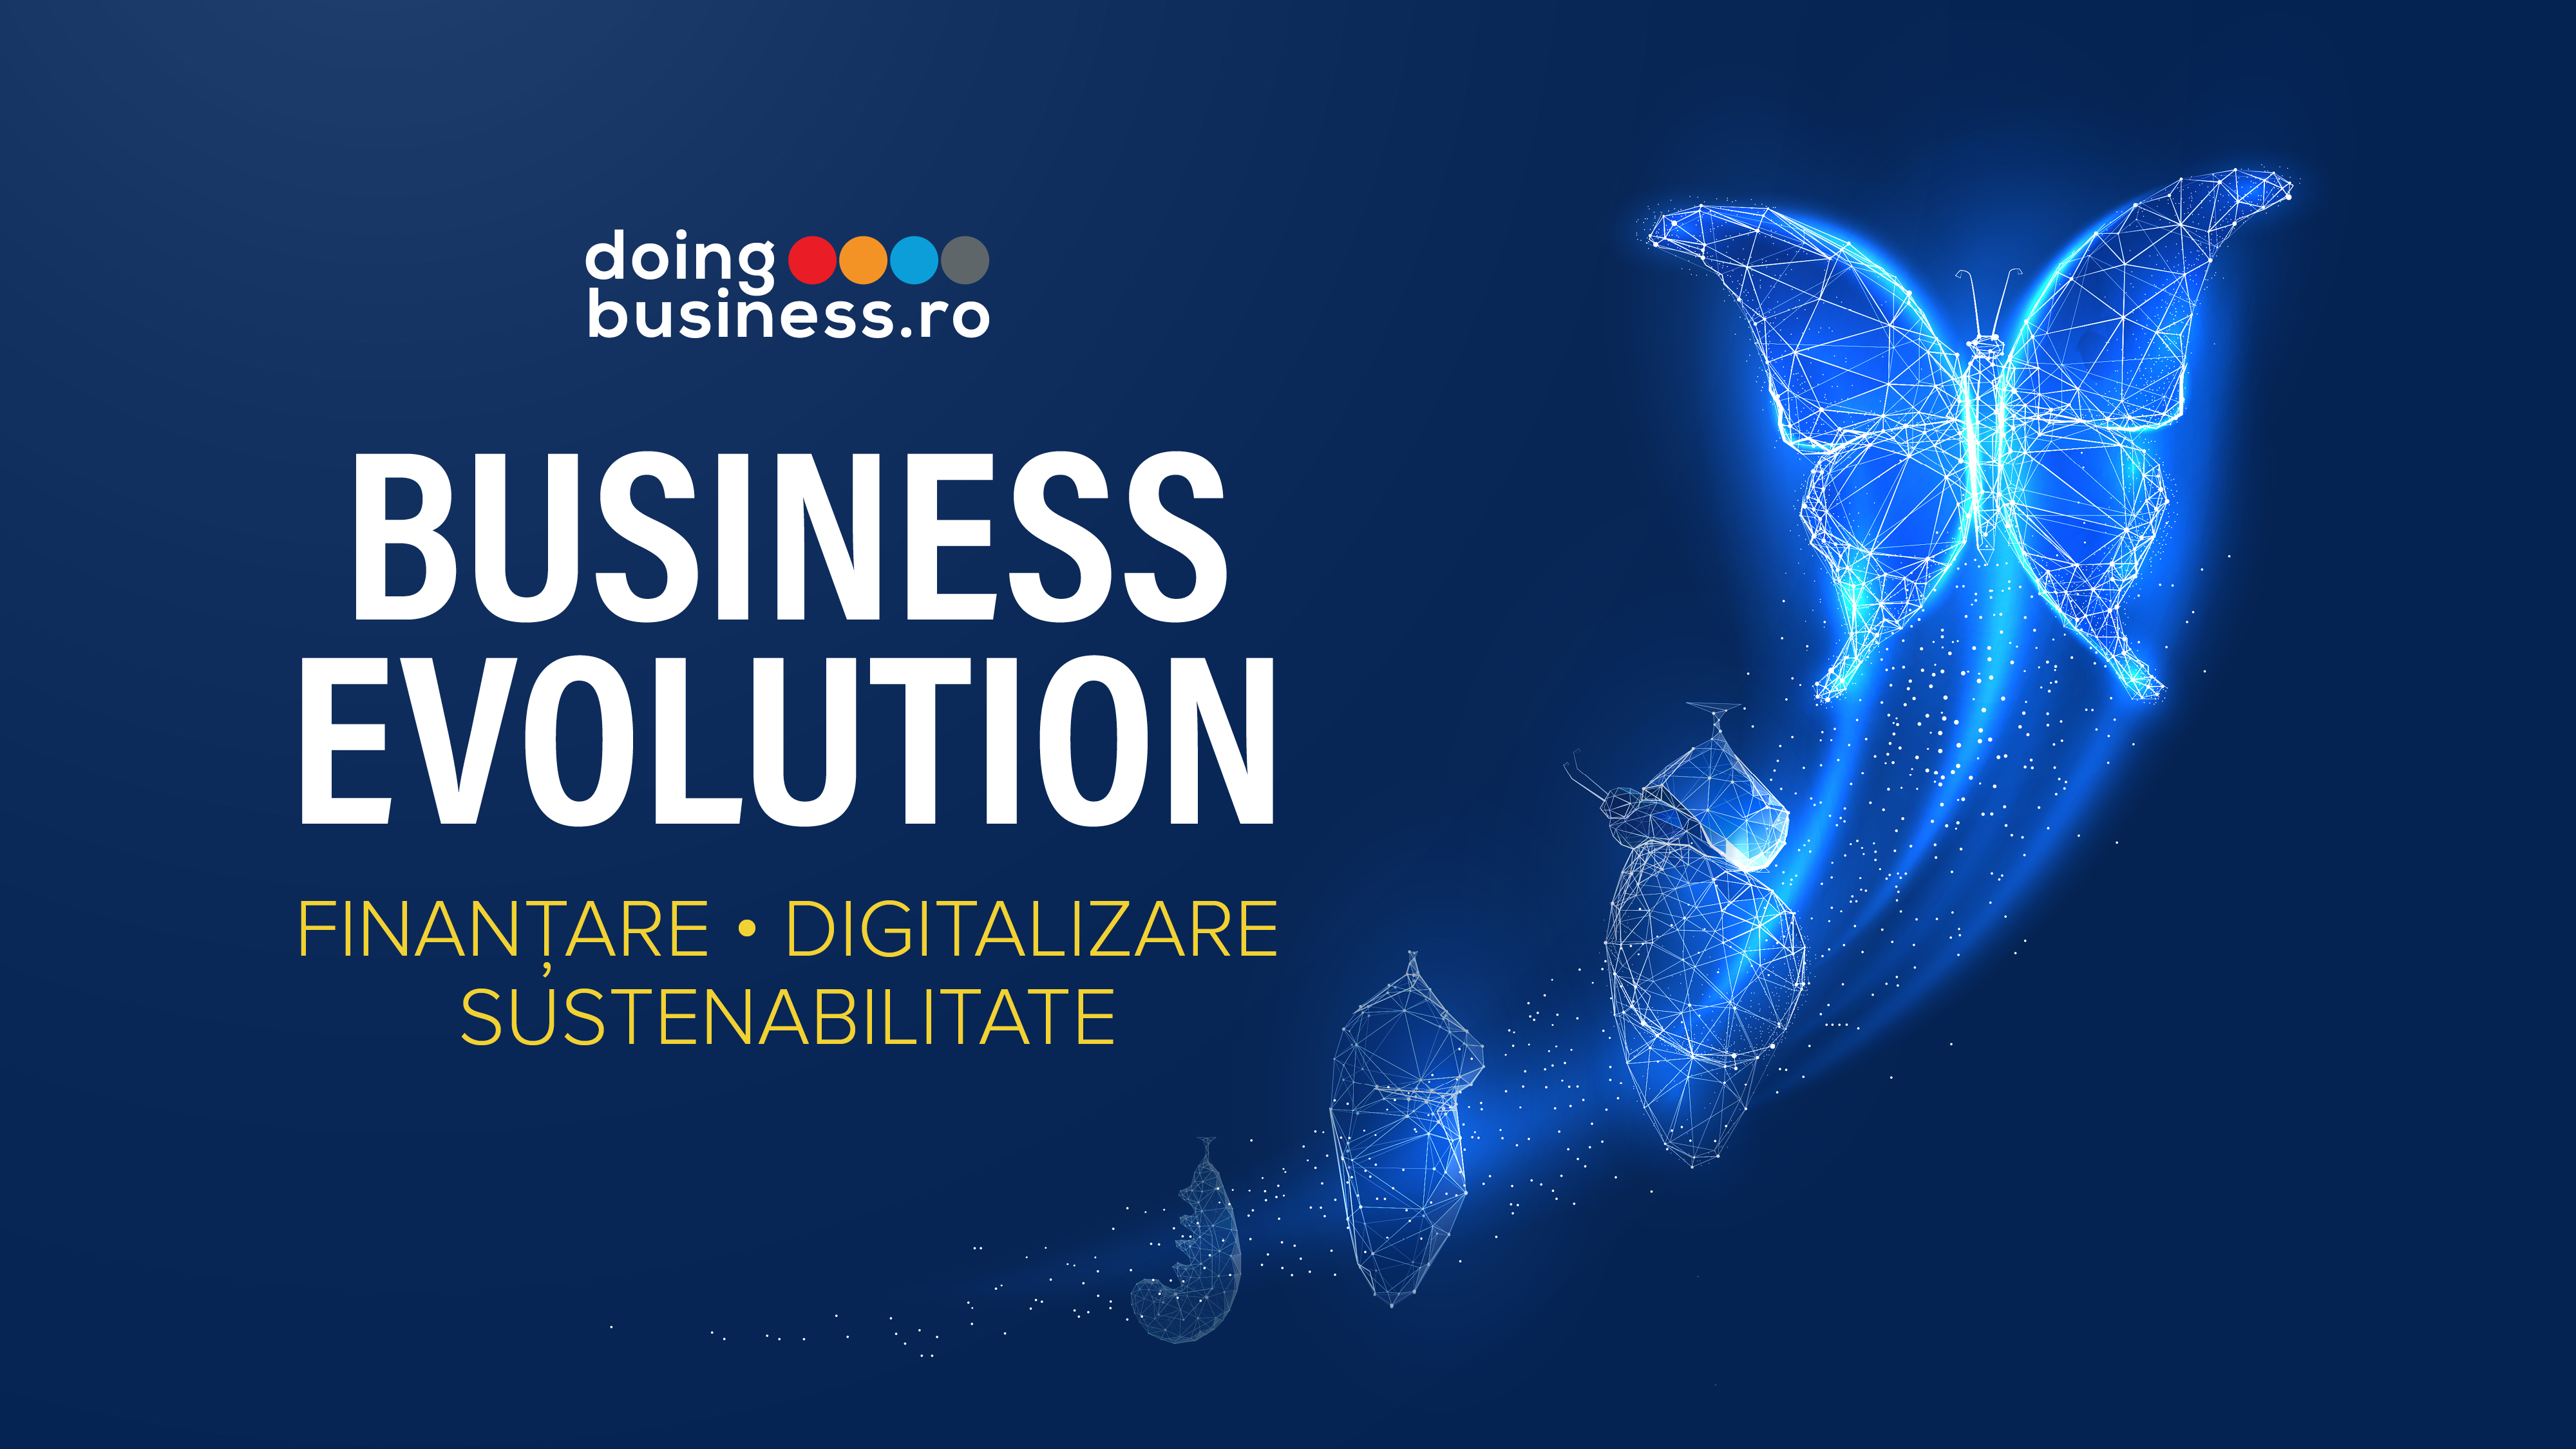 Business Evolution - Finantare, Digitalizare, Sustenabilitate